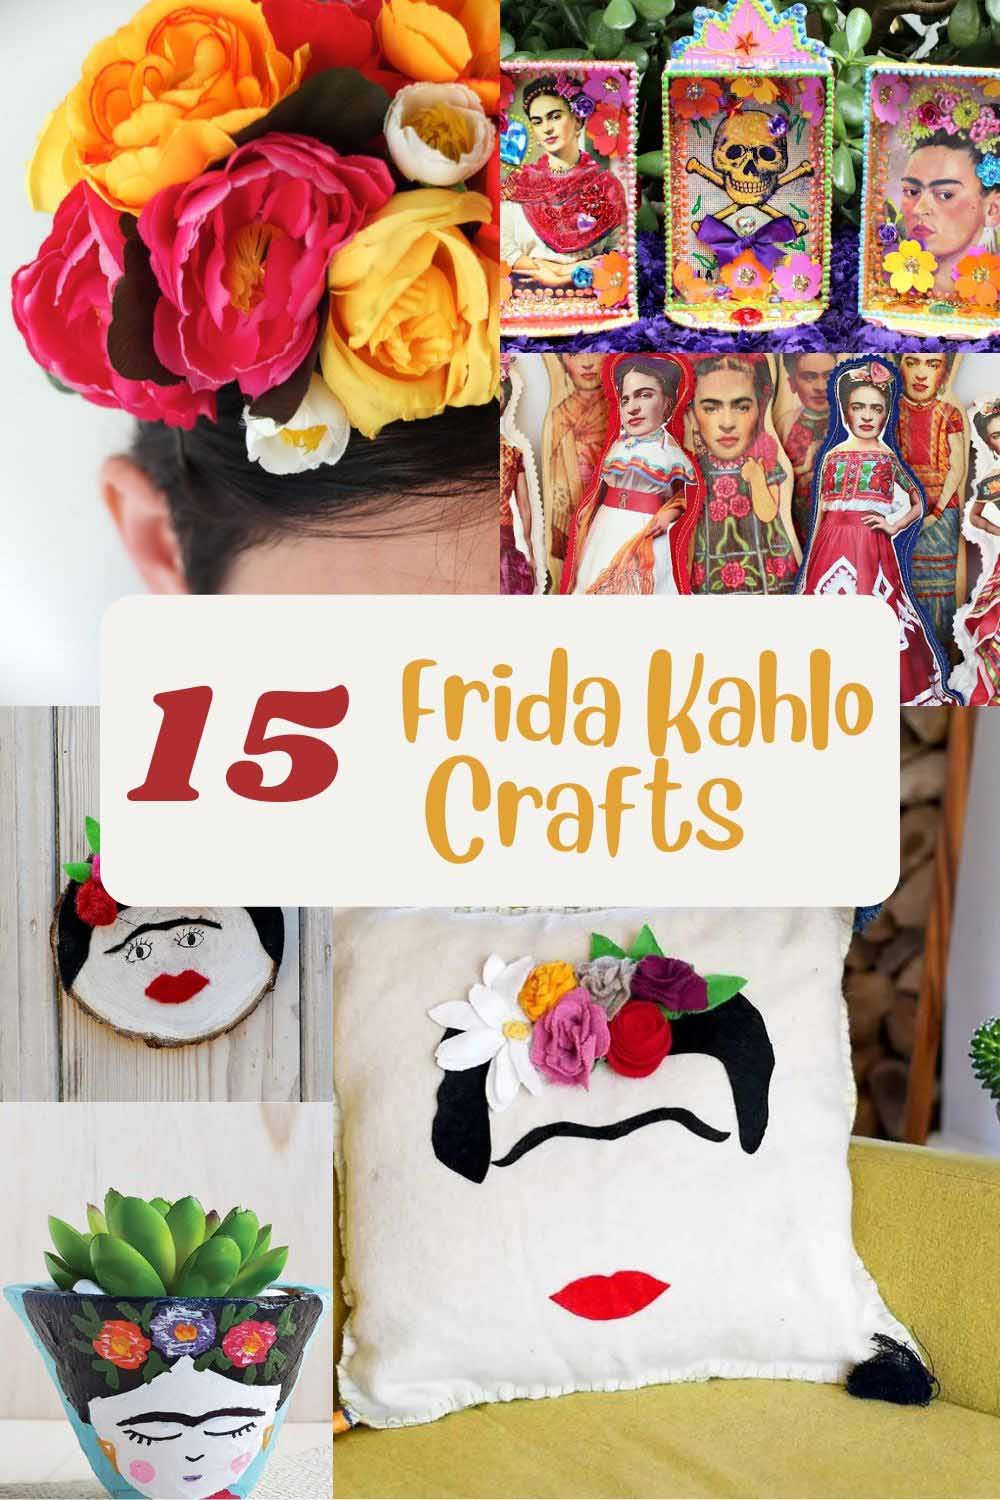 Frida Kahlo Crafts